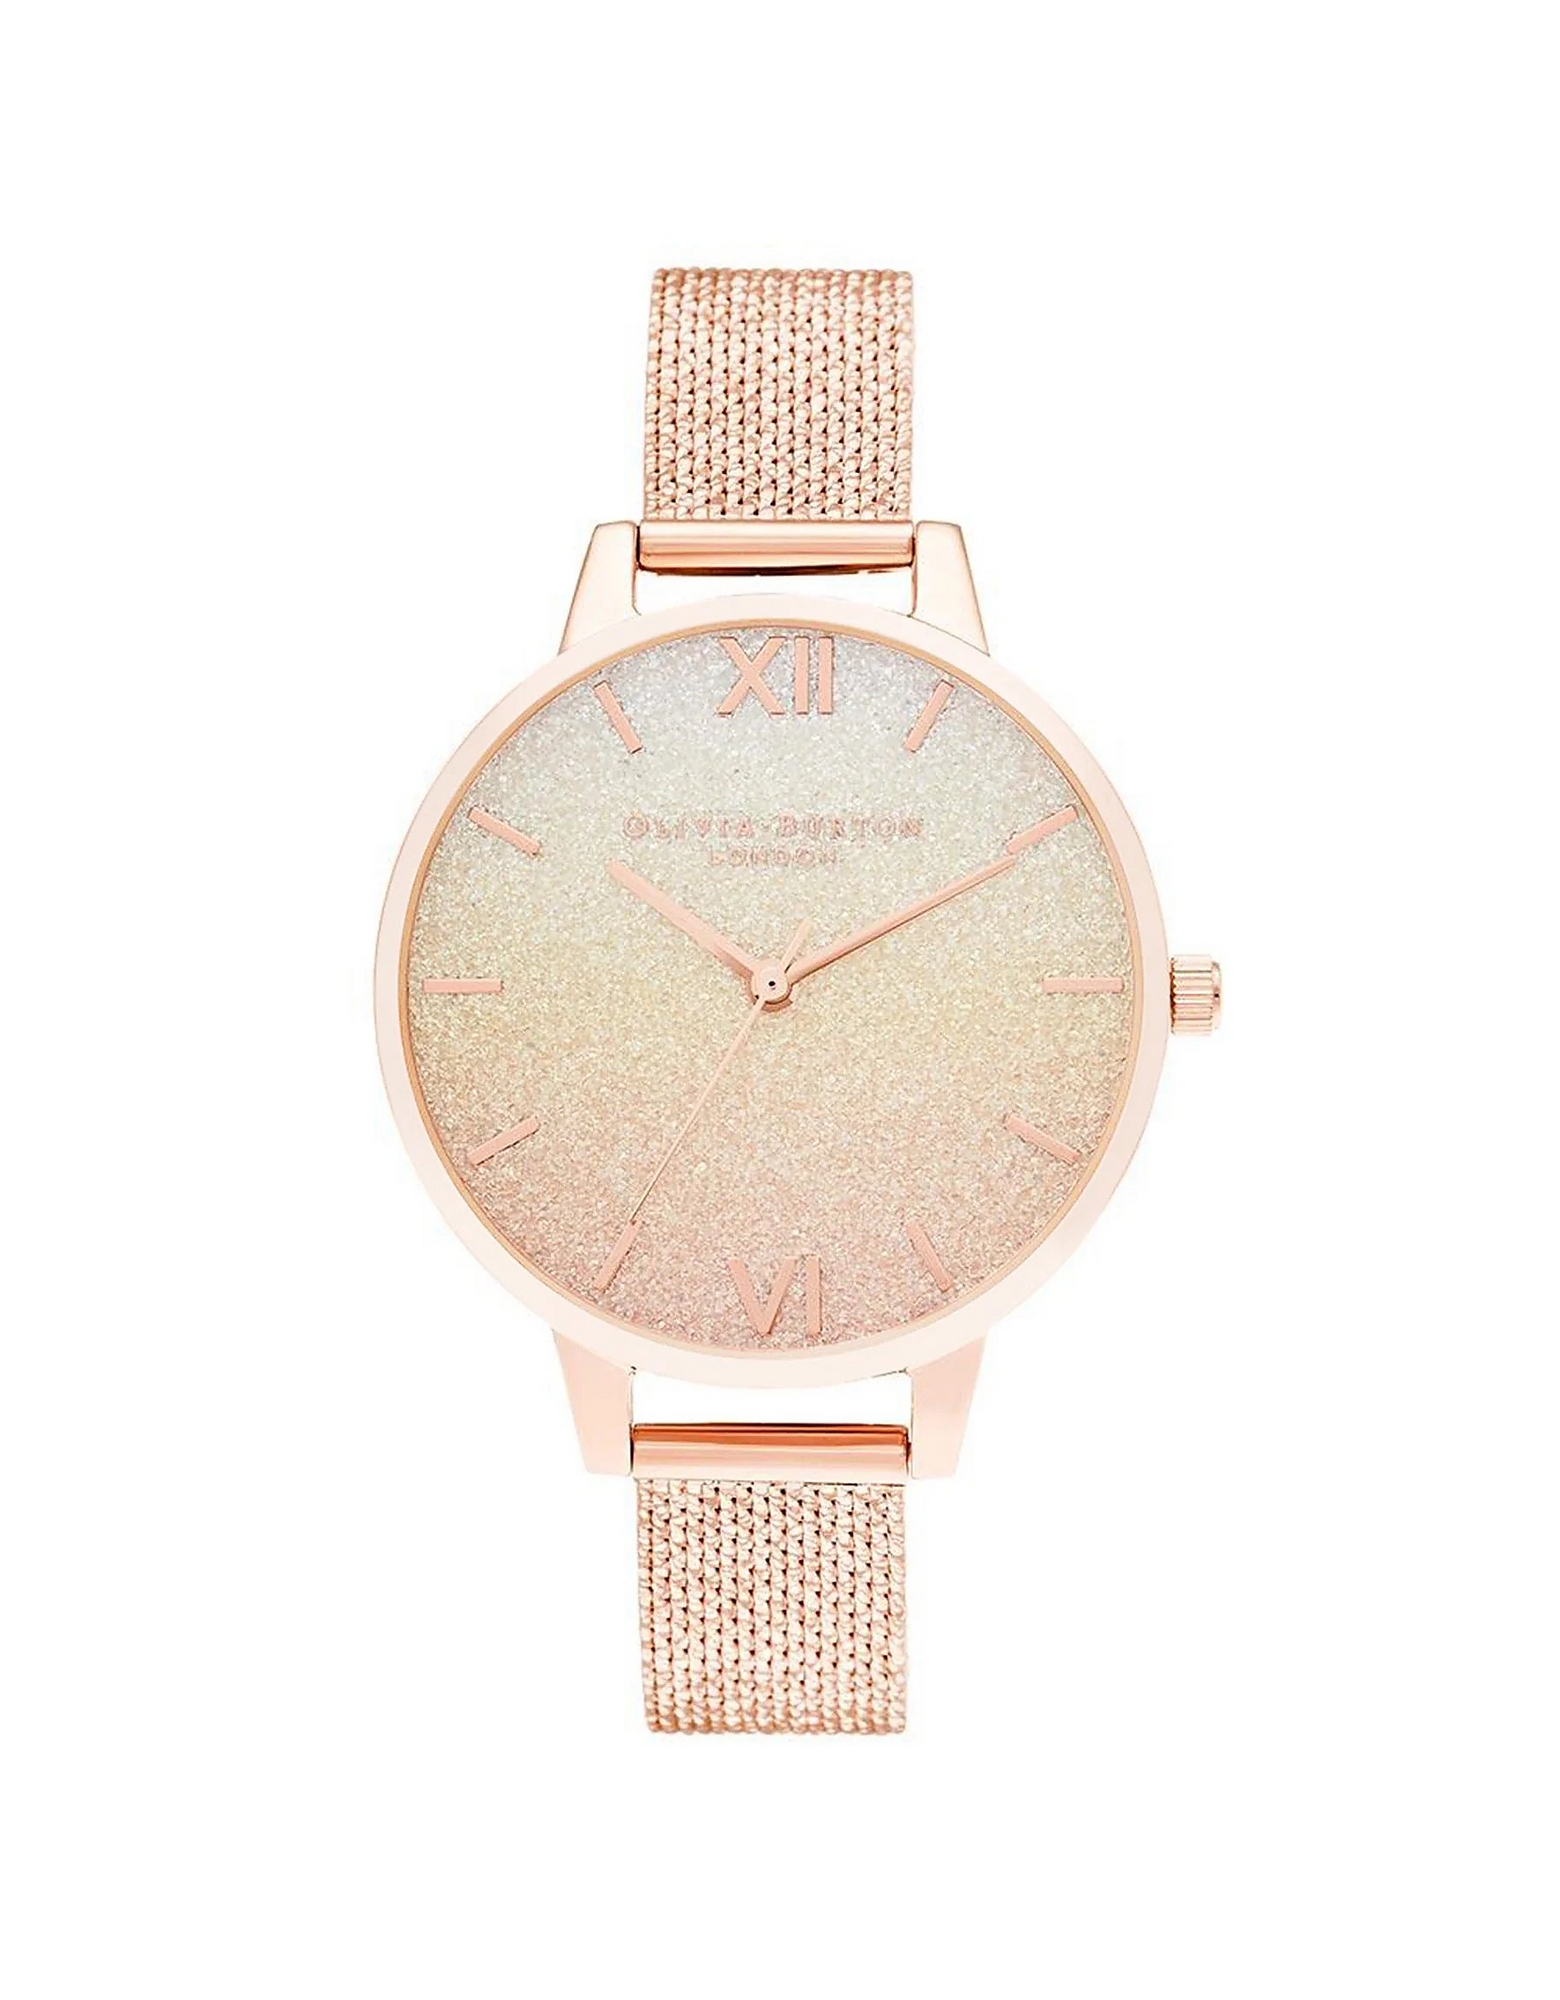 Olivia Burton Designer Women's Watches Women's Quartz Analogue Watch In Pink